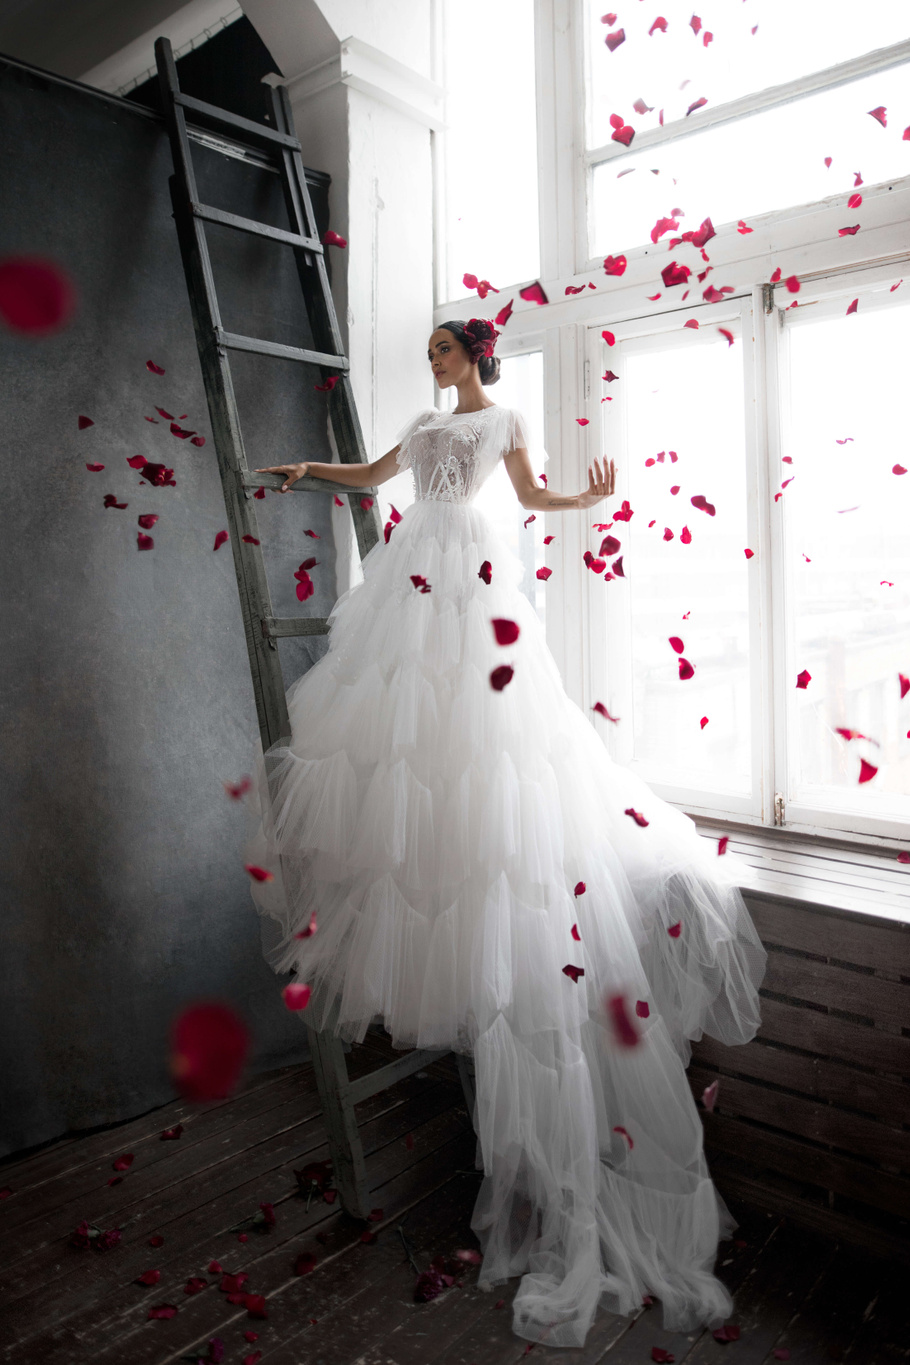 Купить свадебное платье «Лоренсо» Бламмо Биамо из коллекции Нимфа 2020 года в Москве